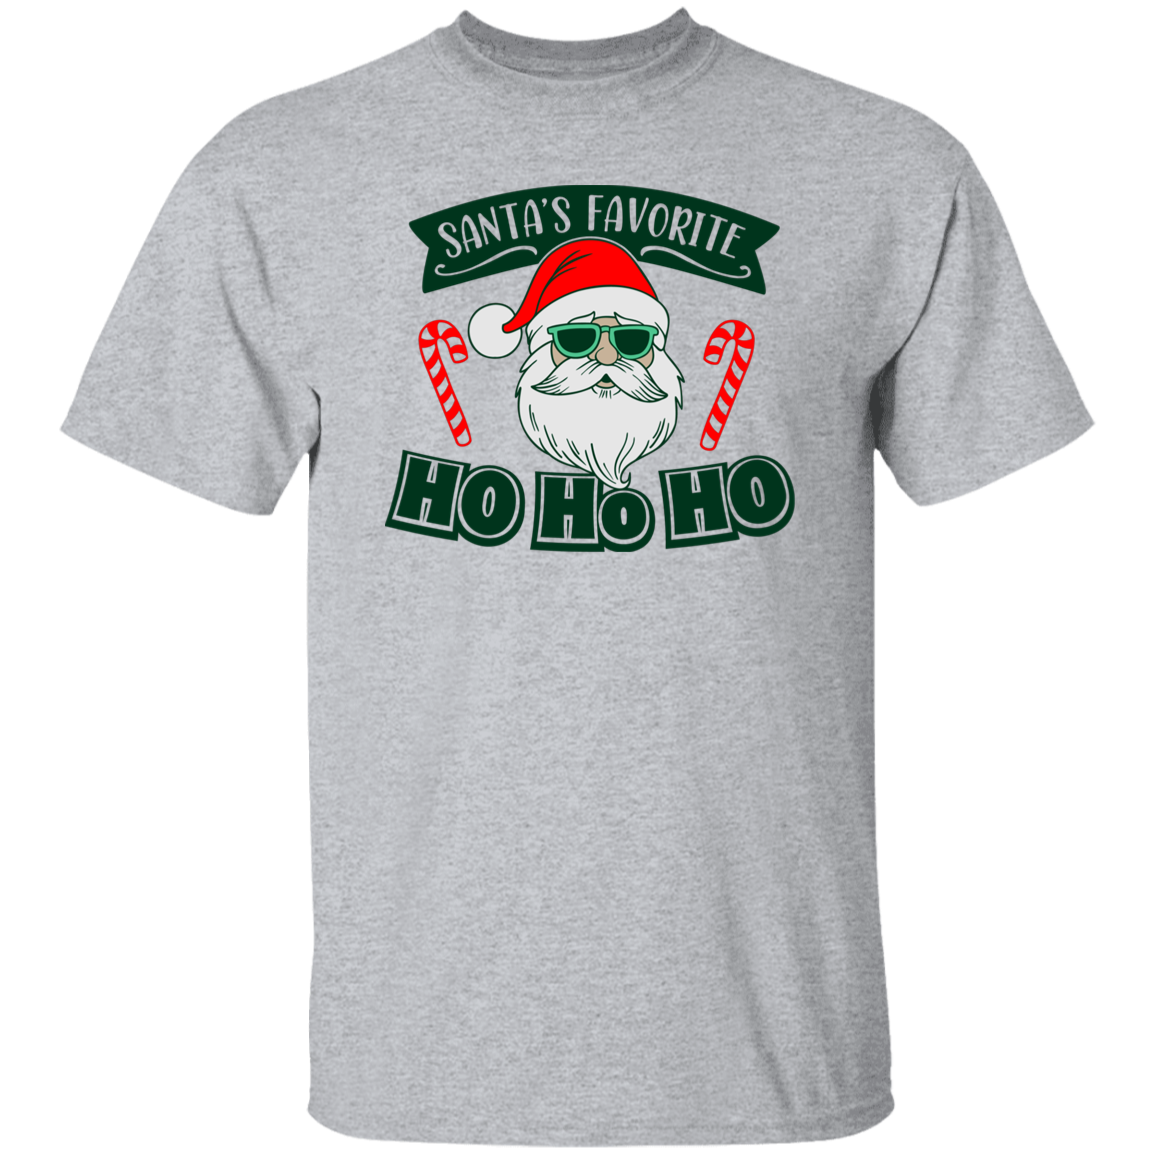 Santas Favorite Ho Ho Ho G500 5.3 oz. T-Shirt